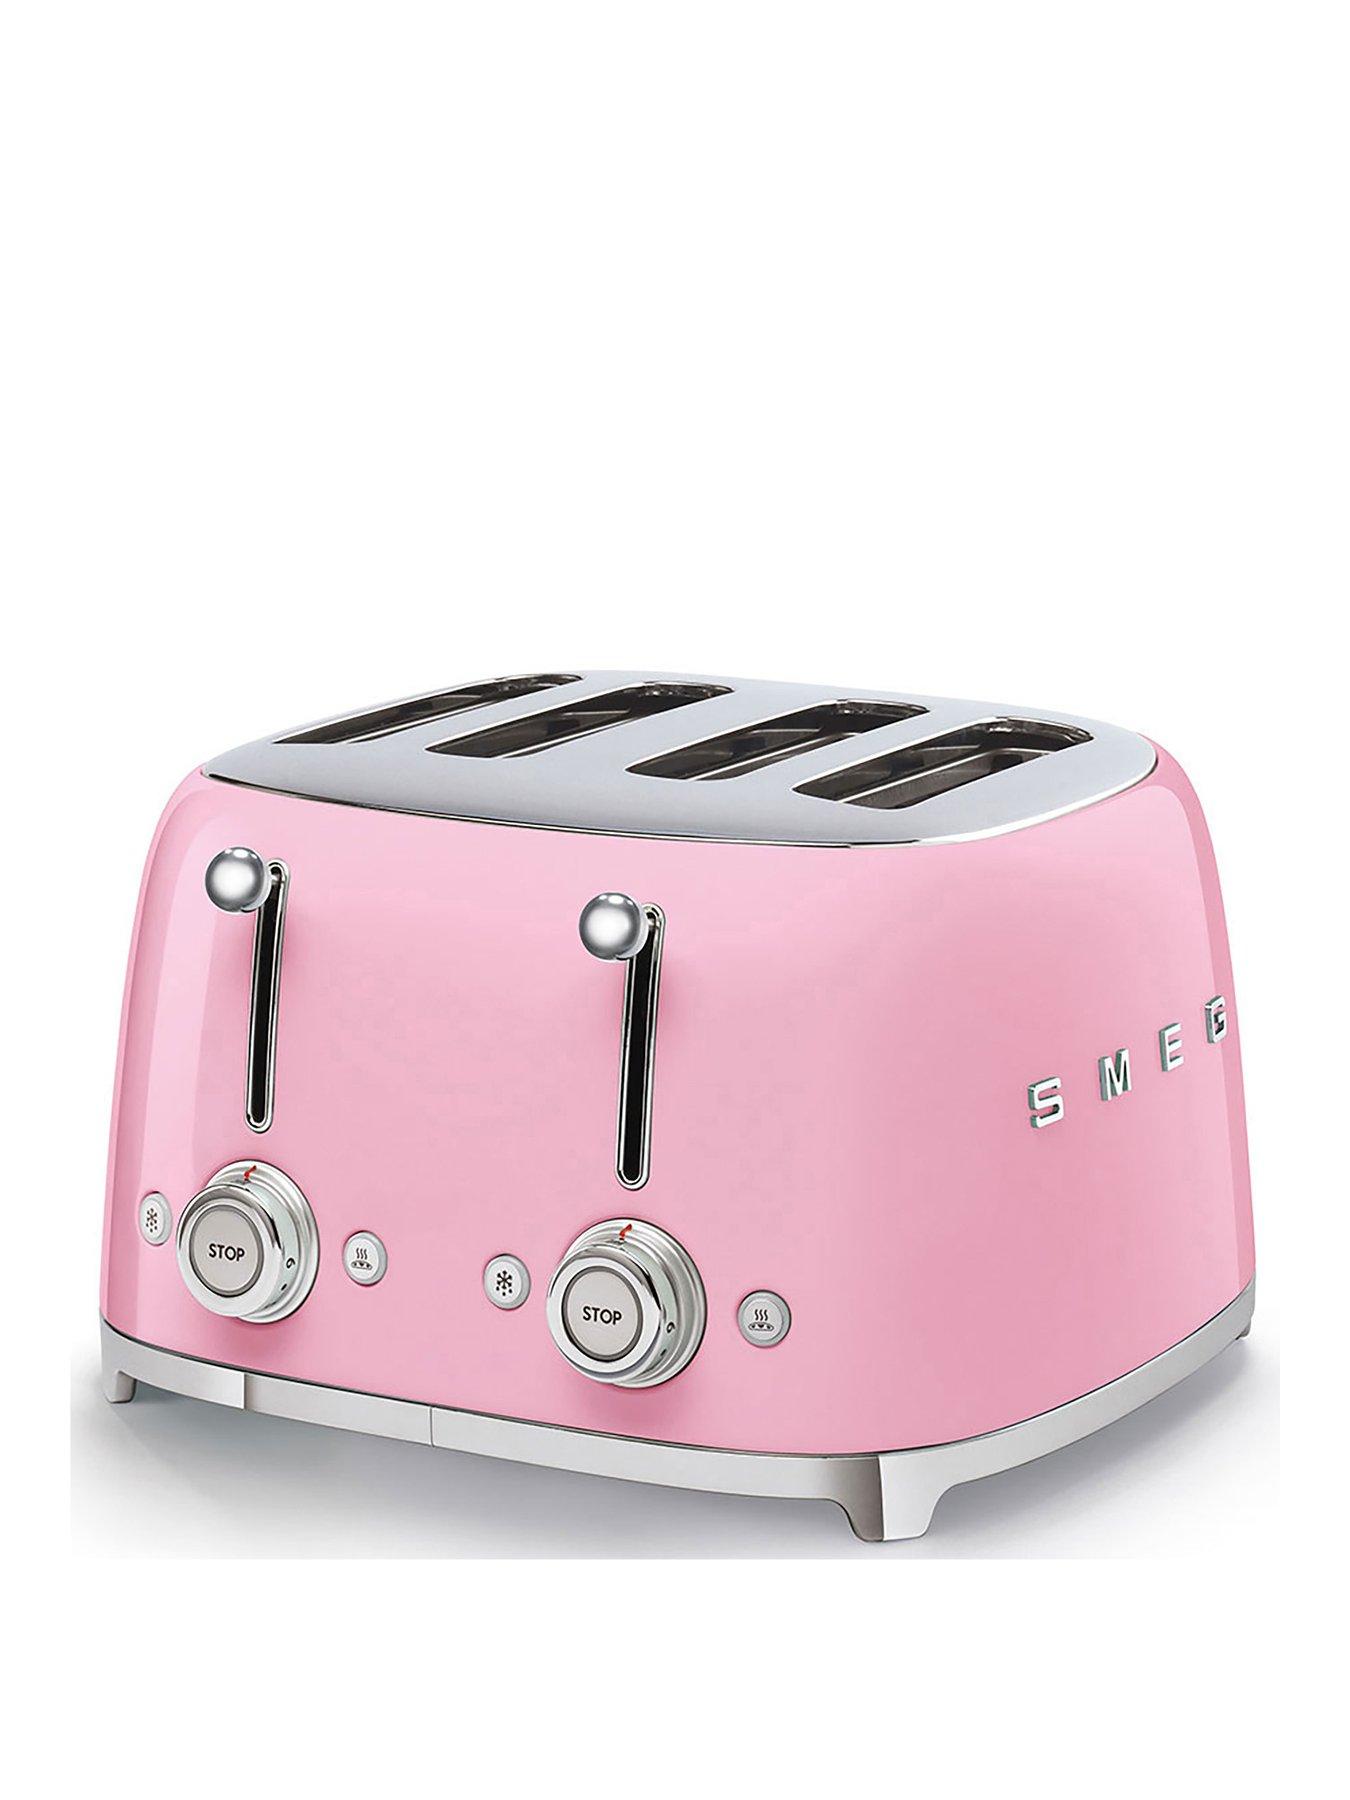 Smeg Tsf03 Retro Style 4 Slice Toaster, 2000W - Pastel Pink